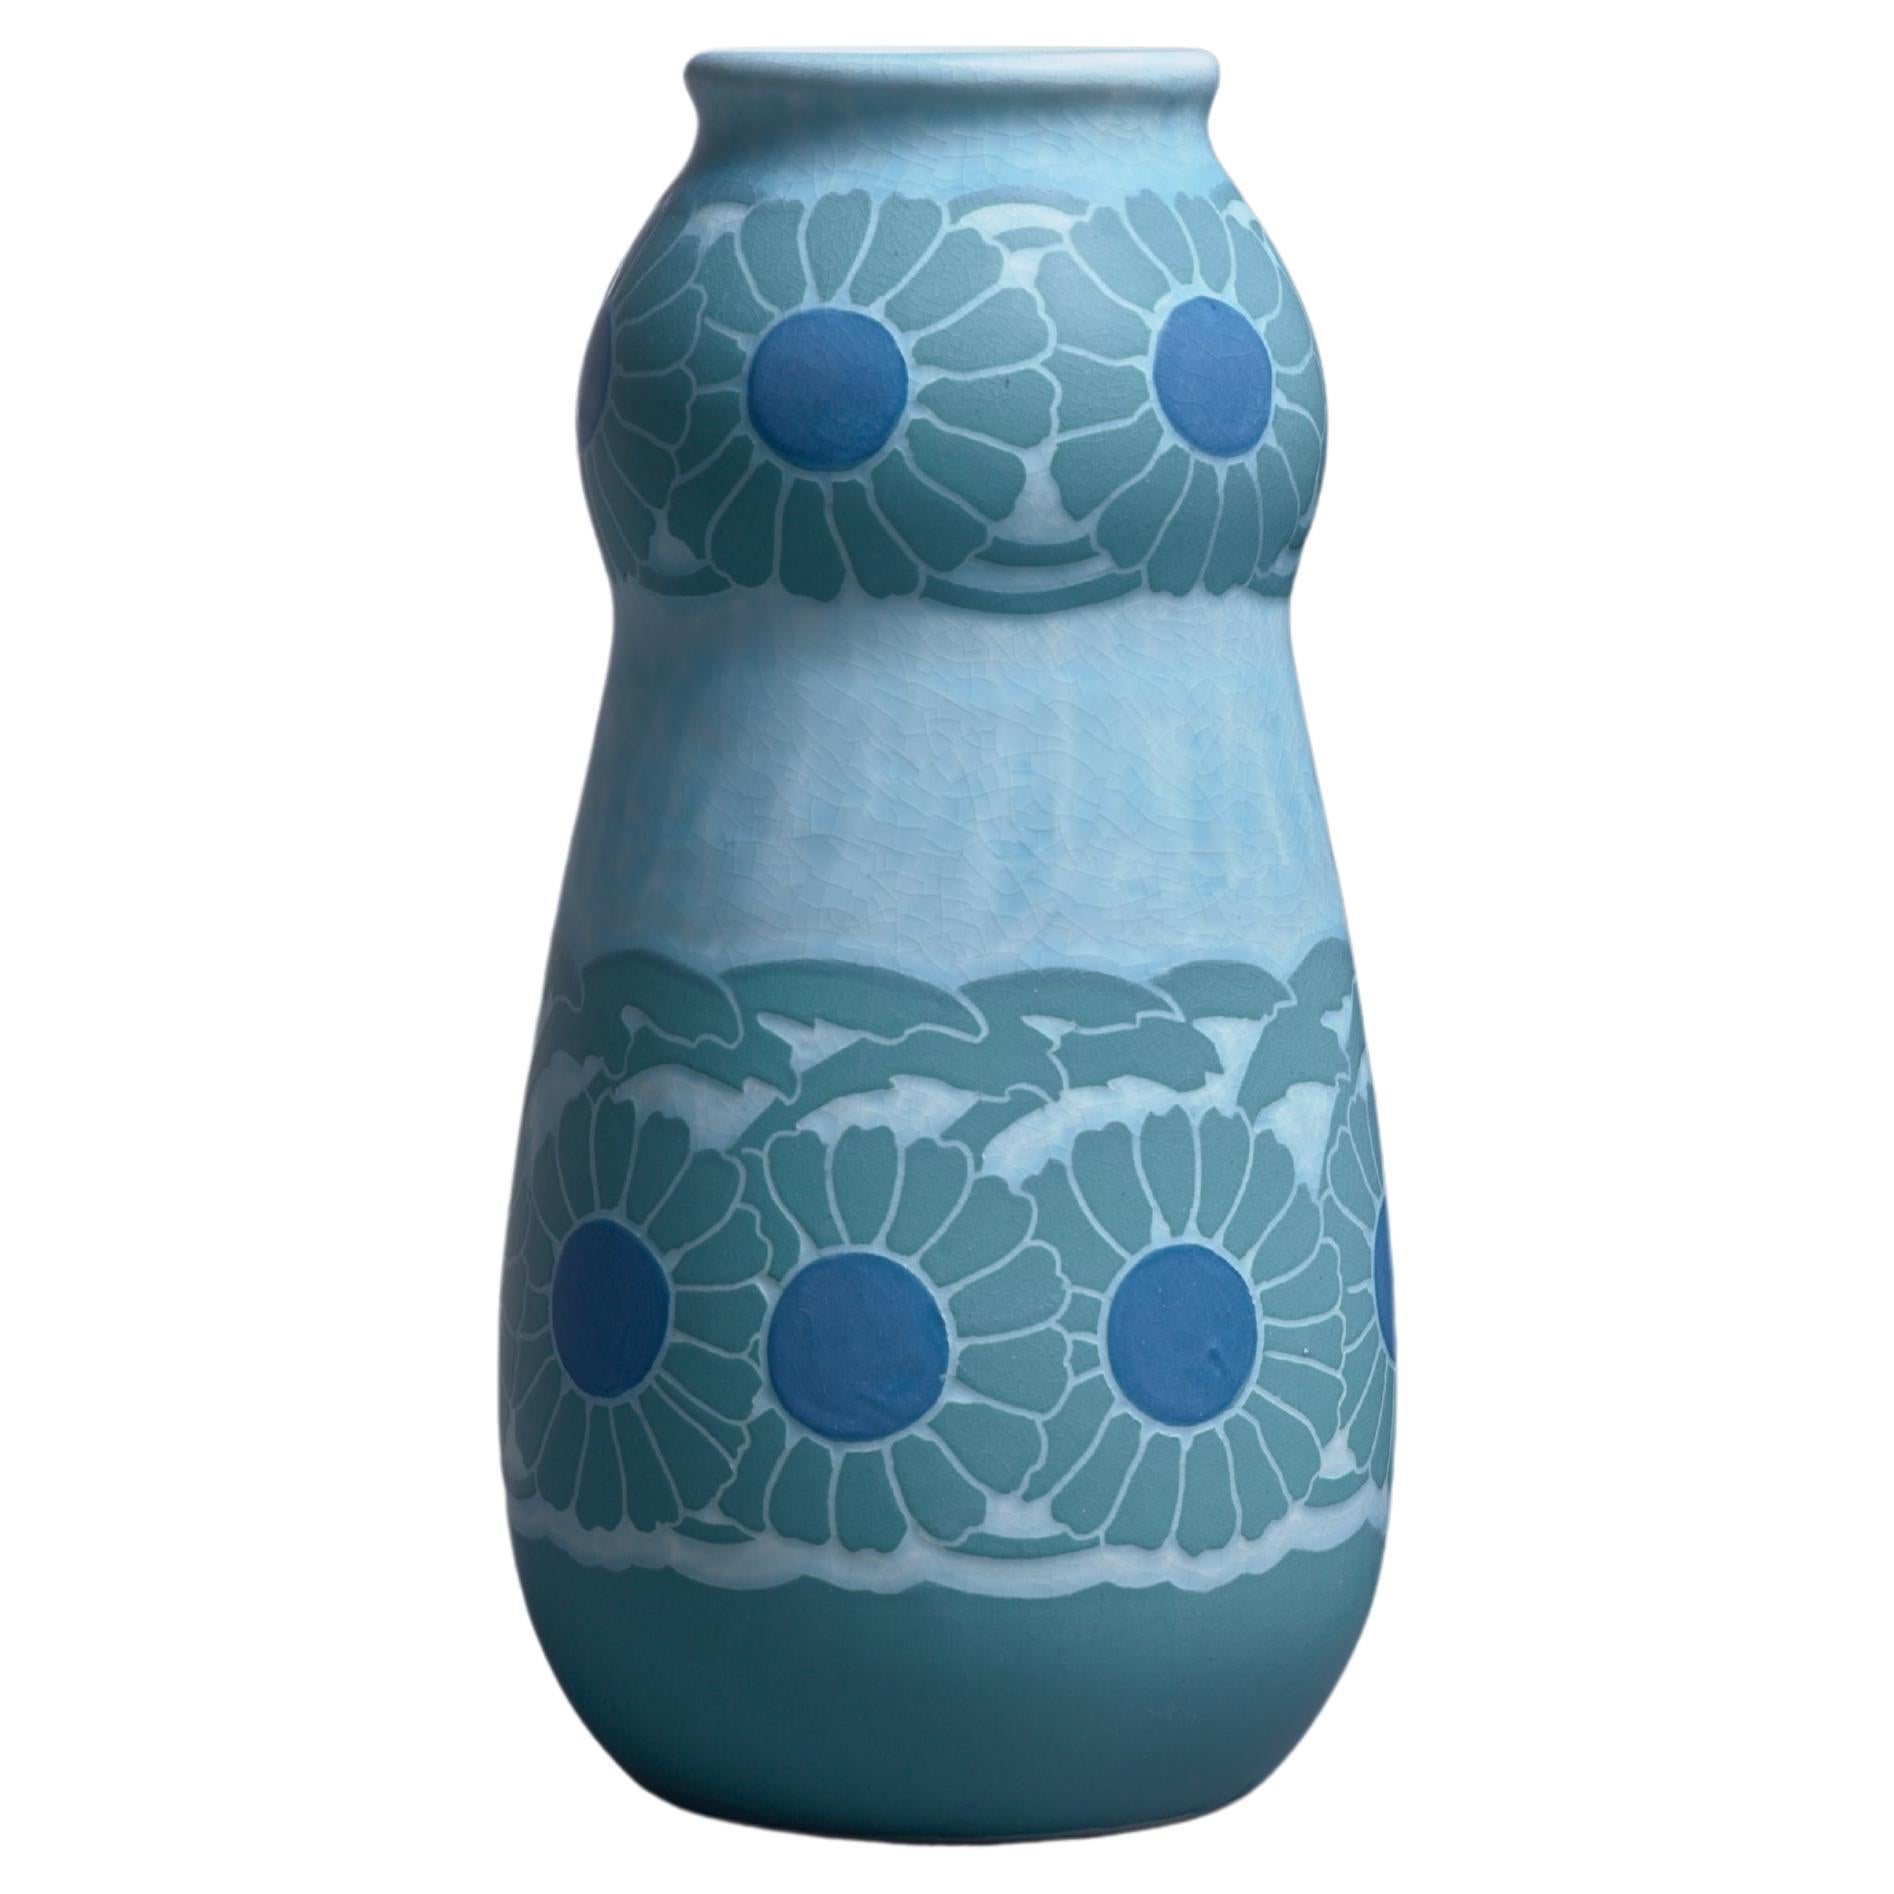 Josef Ekberg Polychrome Sgraffito Ceramic Vase for Gustavsberg, 1910